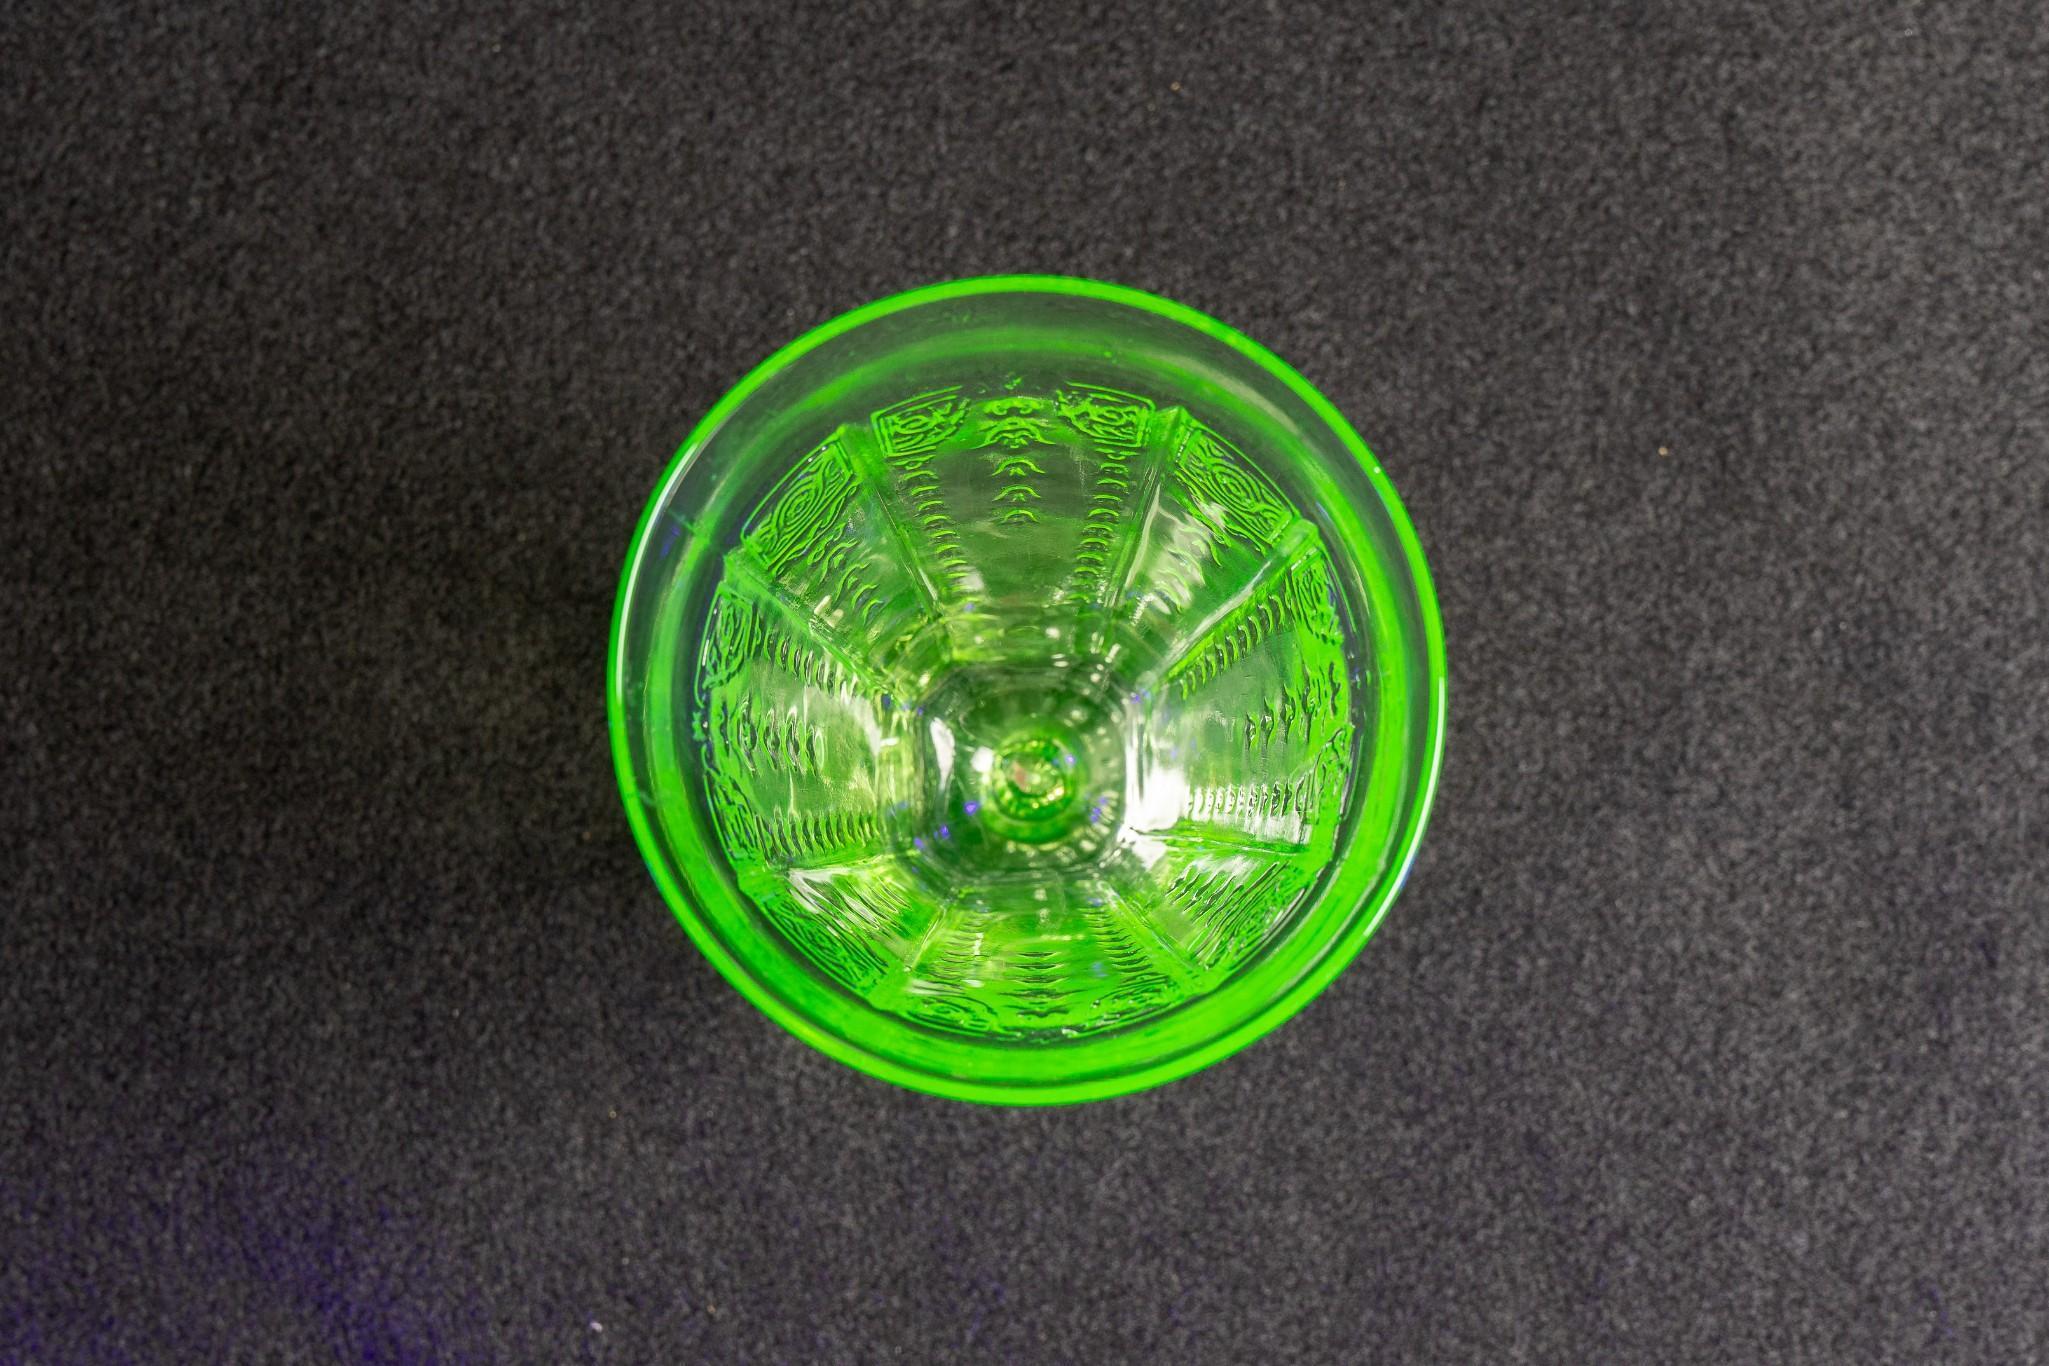 Antique Uranium Malt Glass